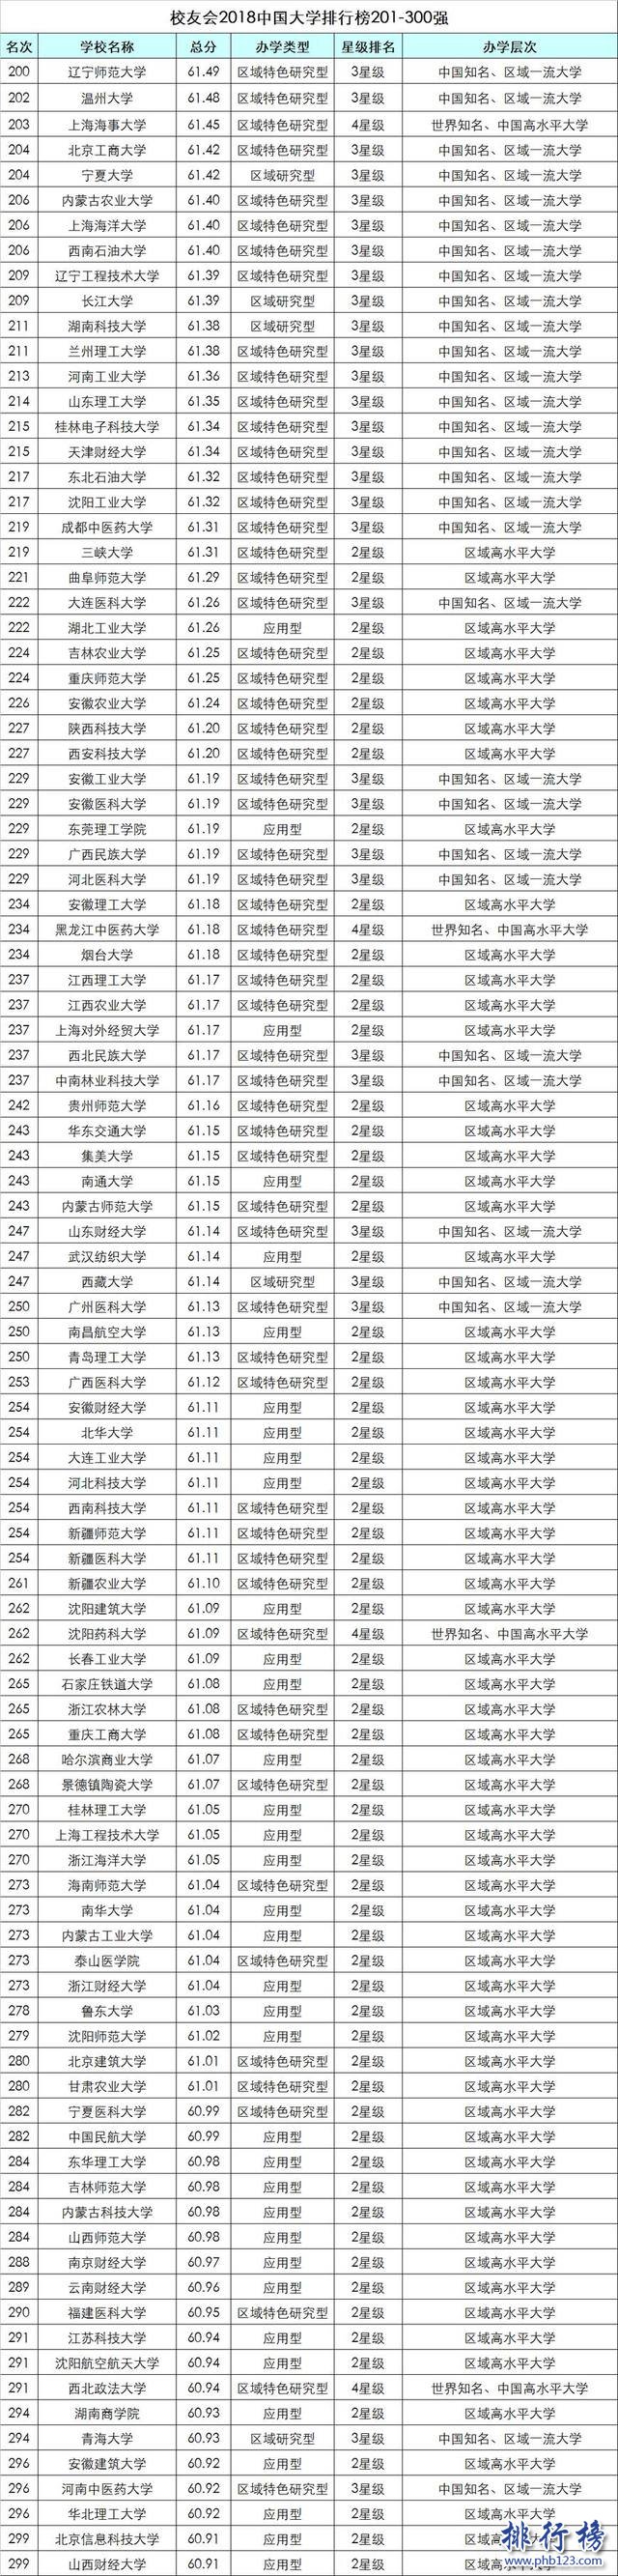 校友会2018中国大学排行榜:北大力压清华登顶,浙大第3(附完整榜单)